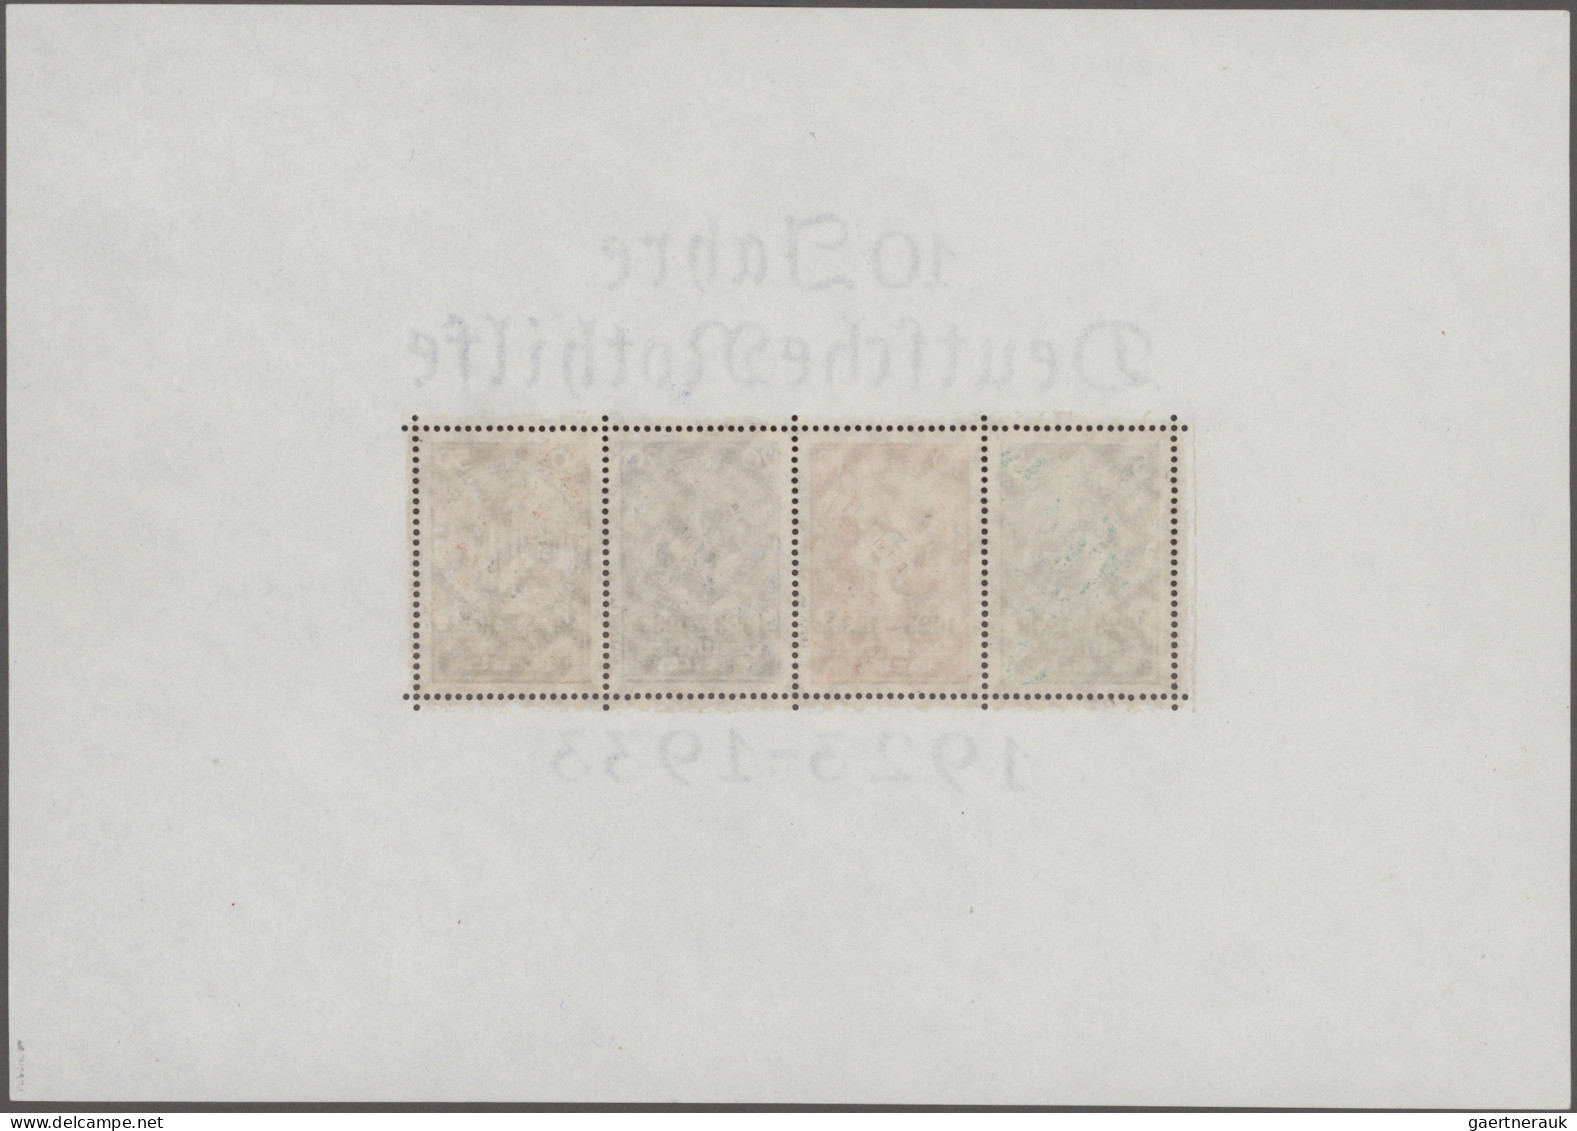 Deutsches Reich - 3. Reich: 1933, Nothilfe-Block, Ungebraucht, Gepr. Peschl BPP, - Unused Stamps